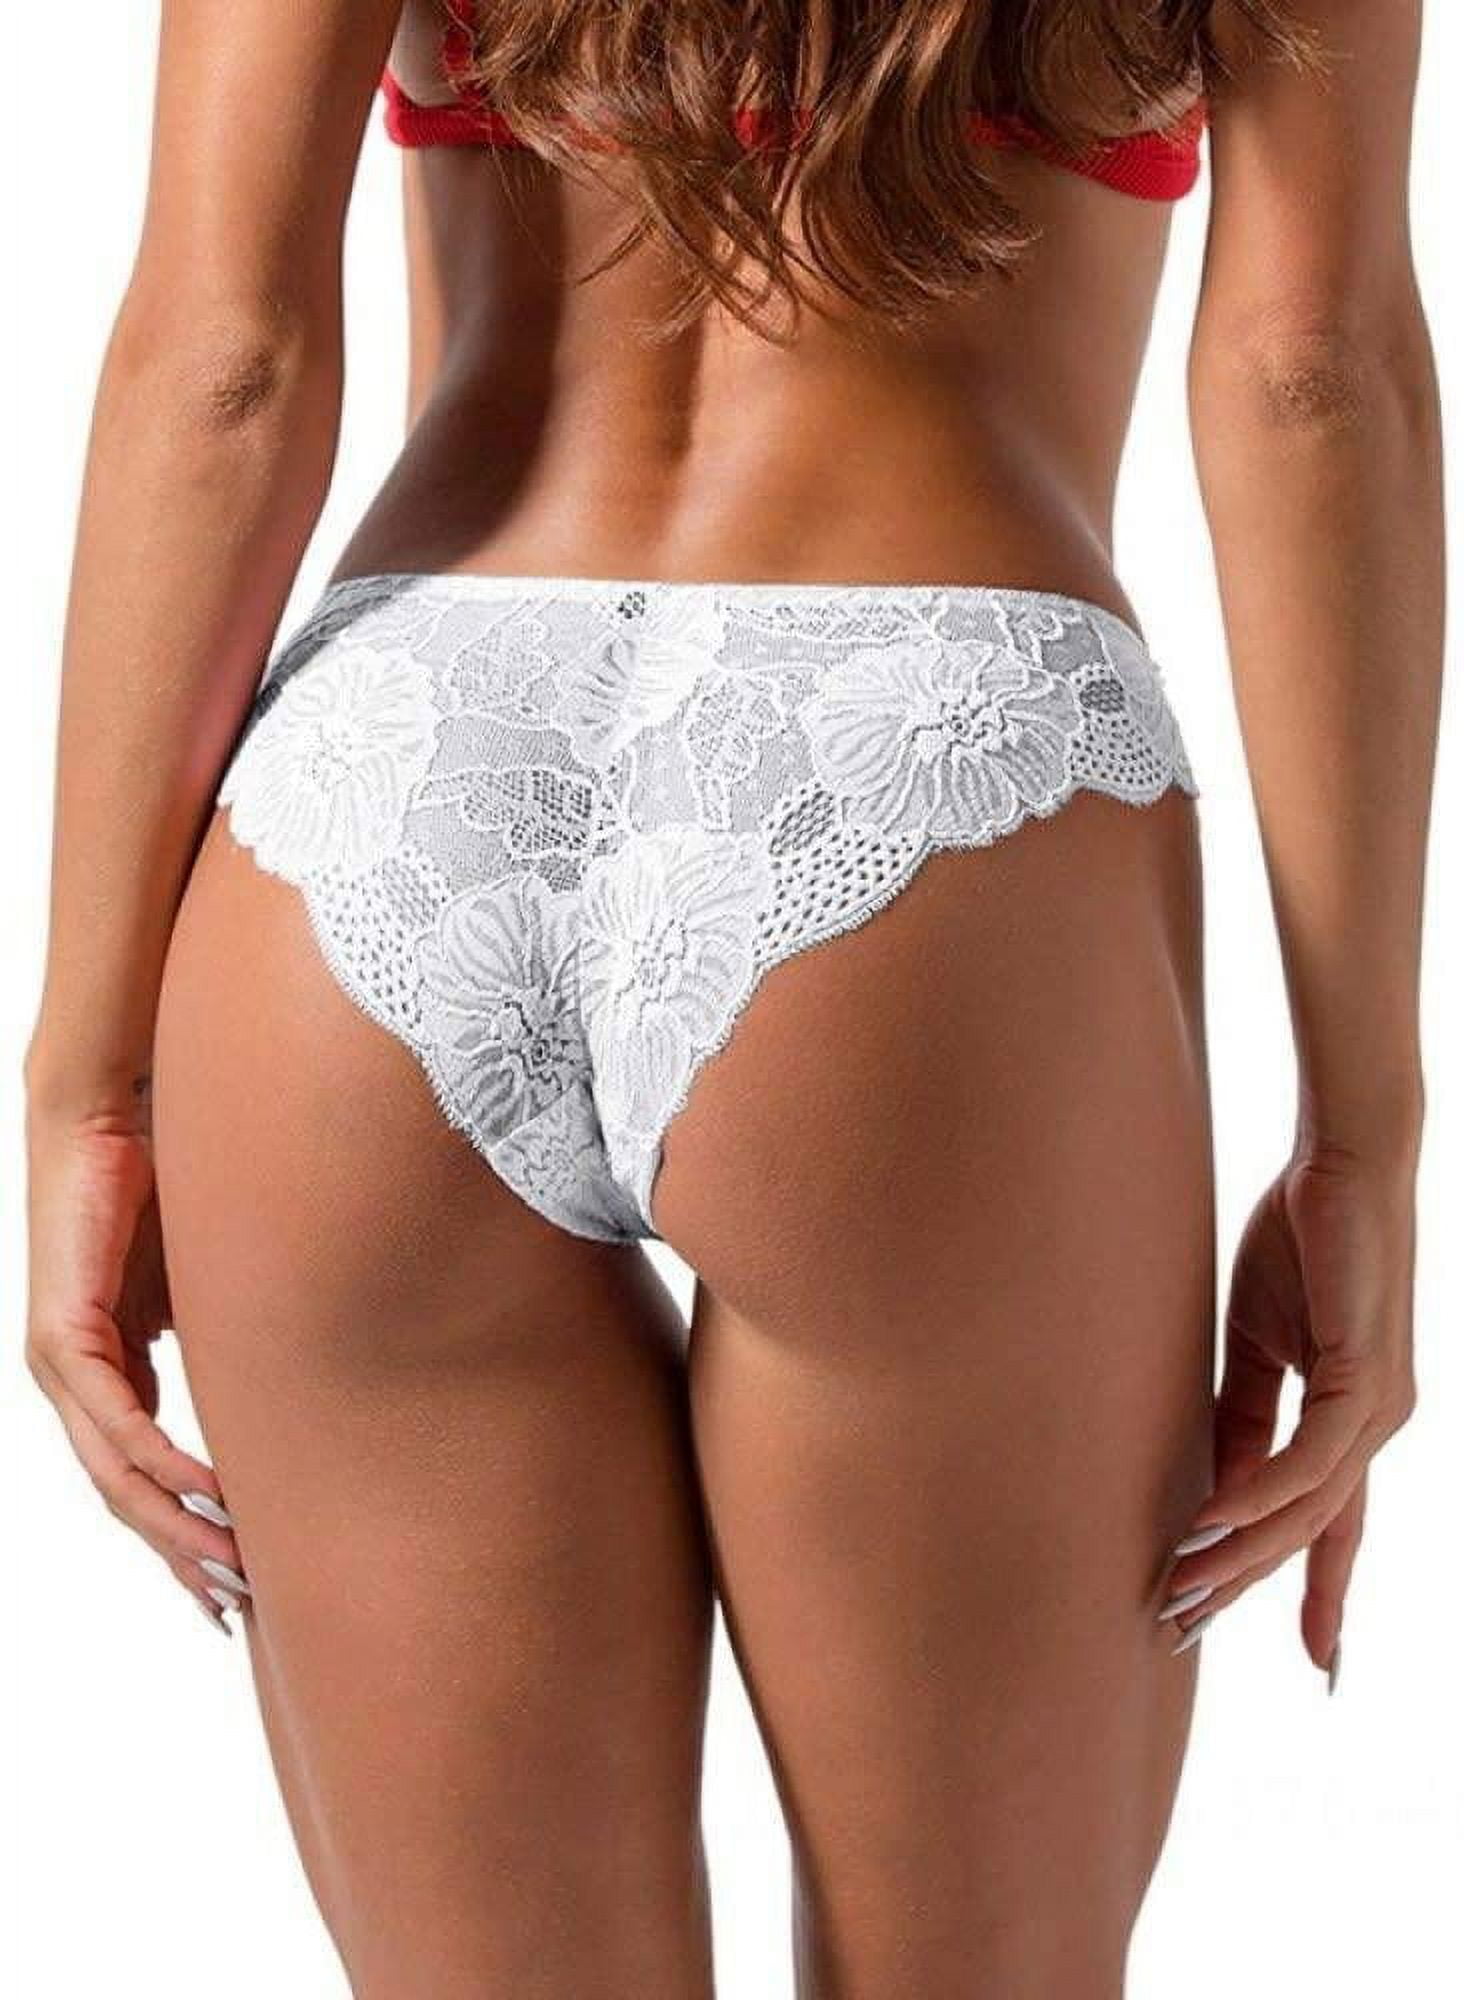 Shop Generic Hot 3pcs/lot Sexy Panties Women's Set Panties Solid